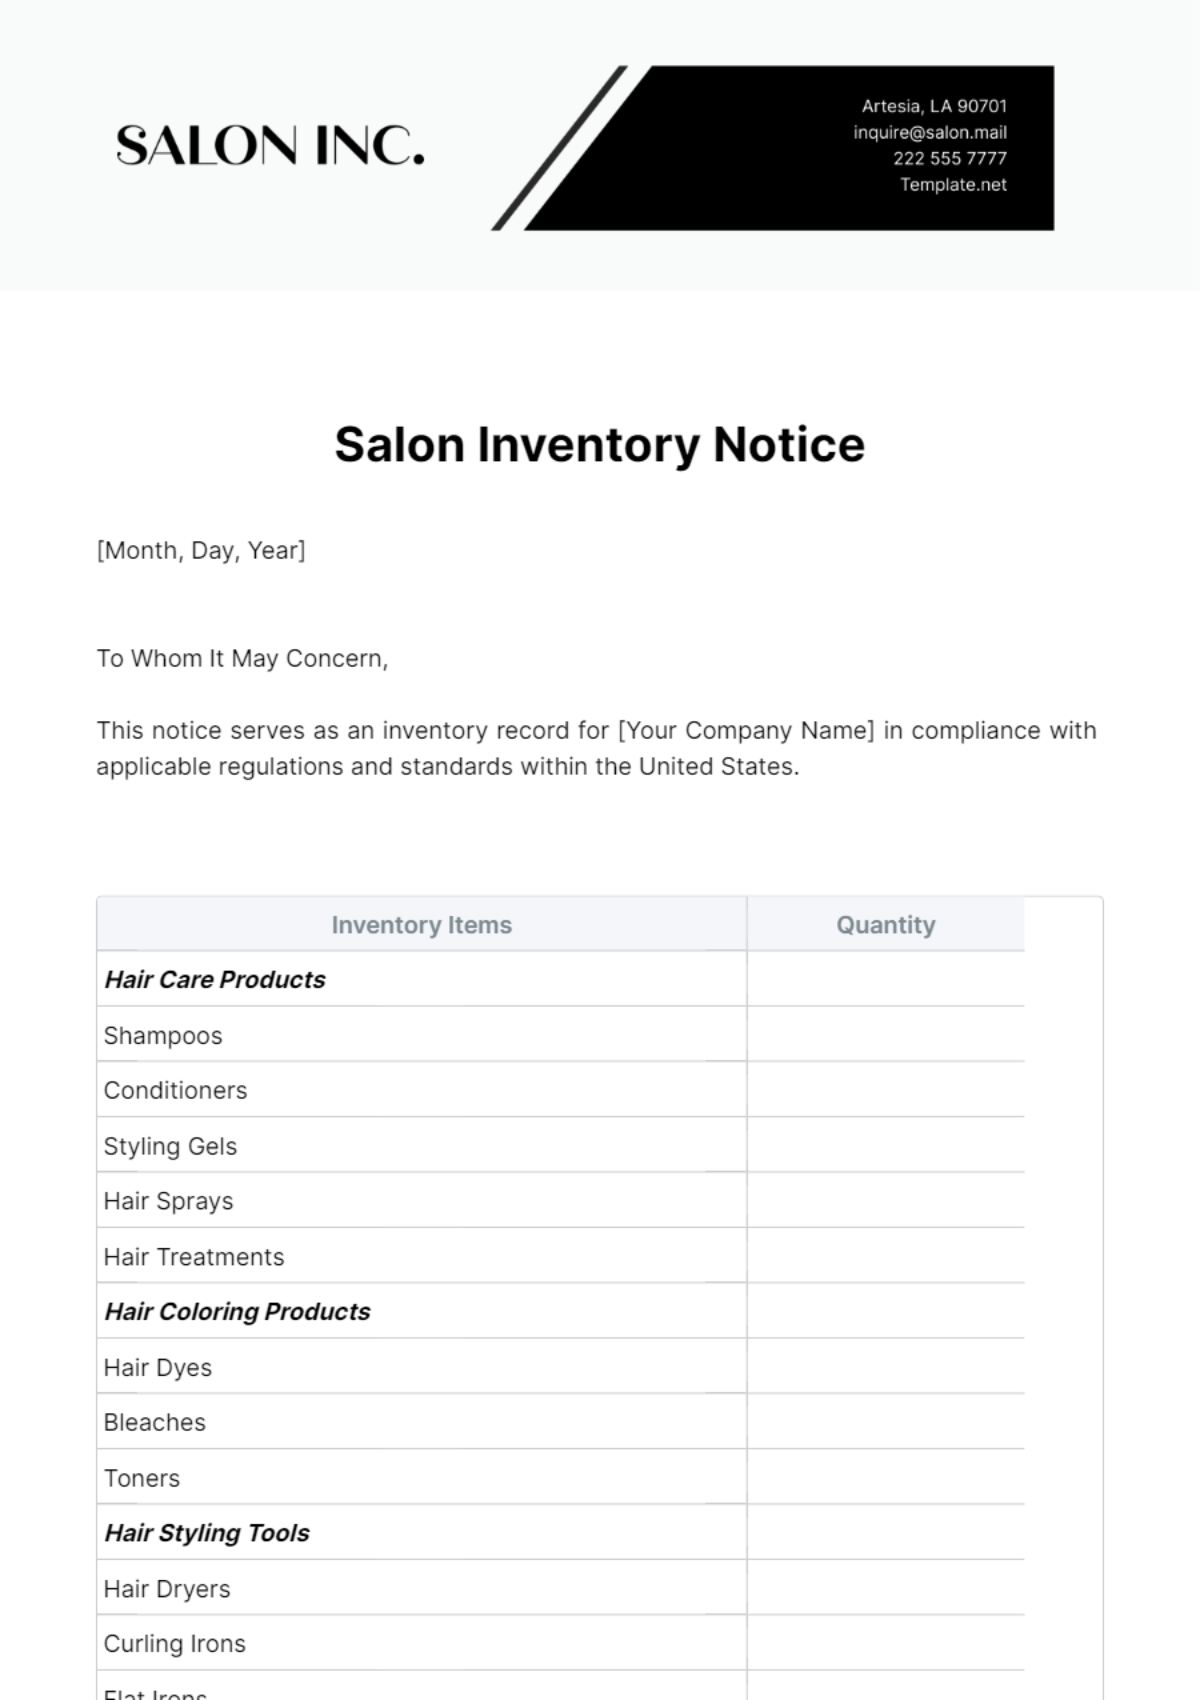 Salon Inventory Notice Template